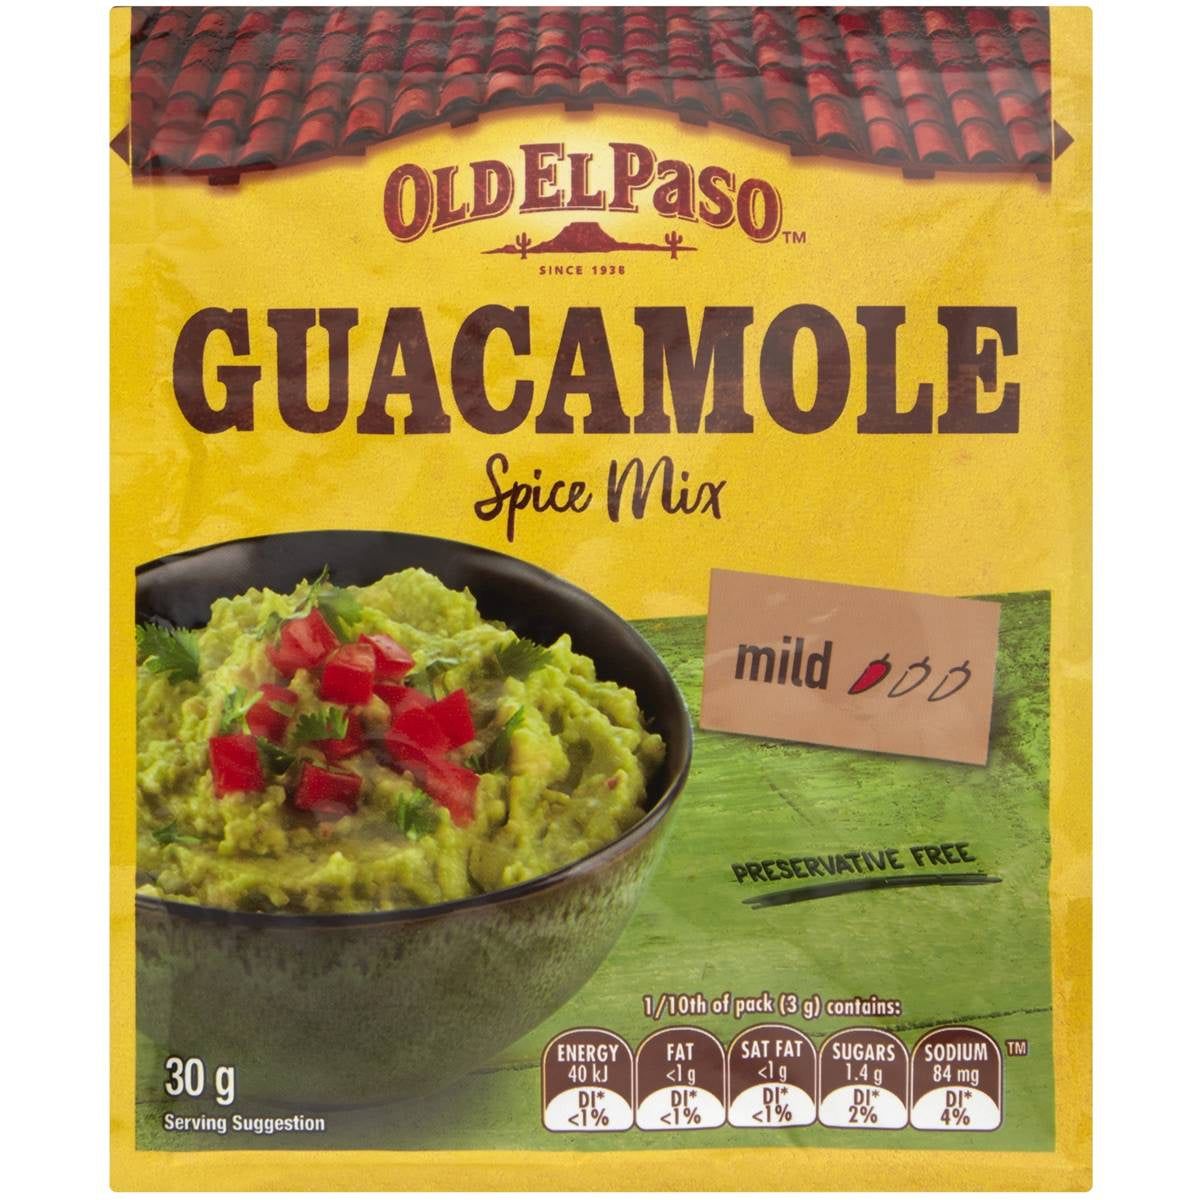 Old El Paso Spice Mix Guacamole 30gm